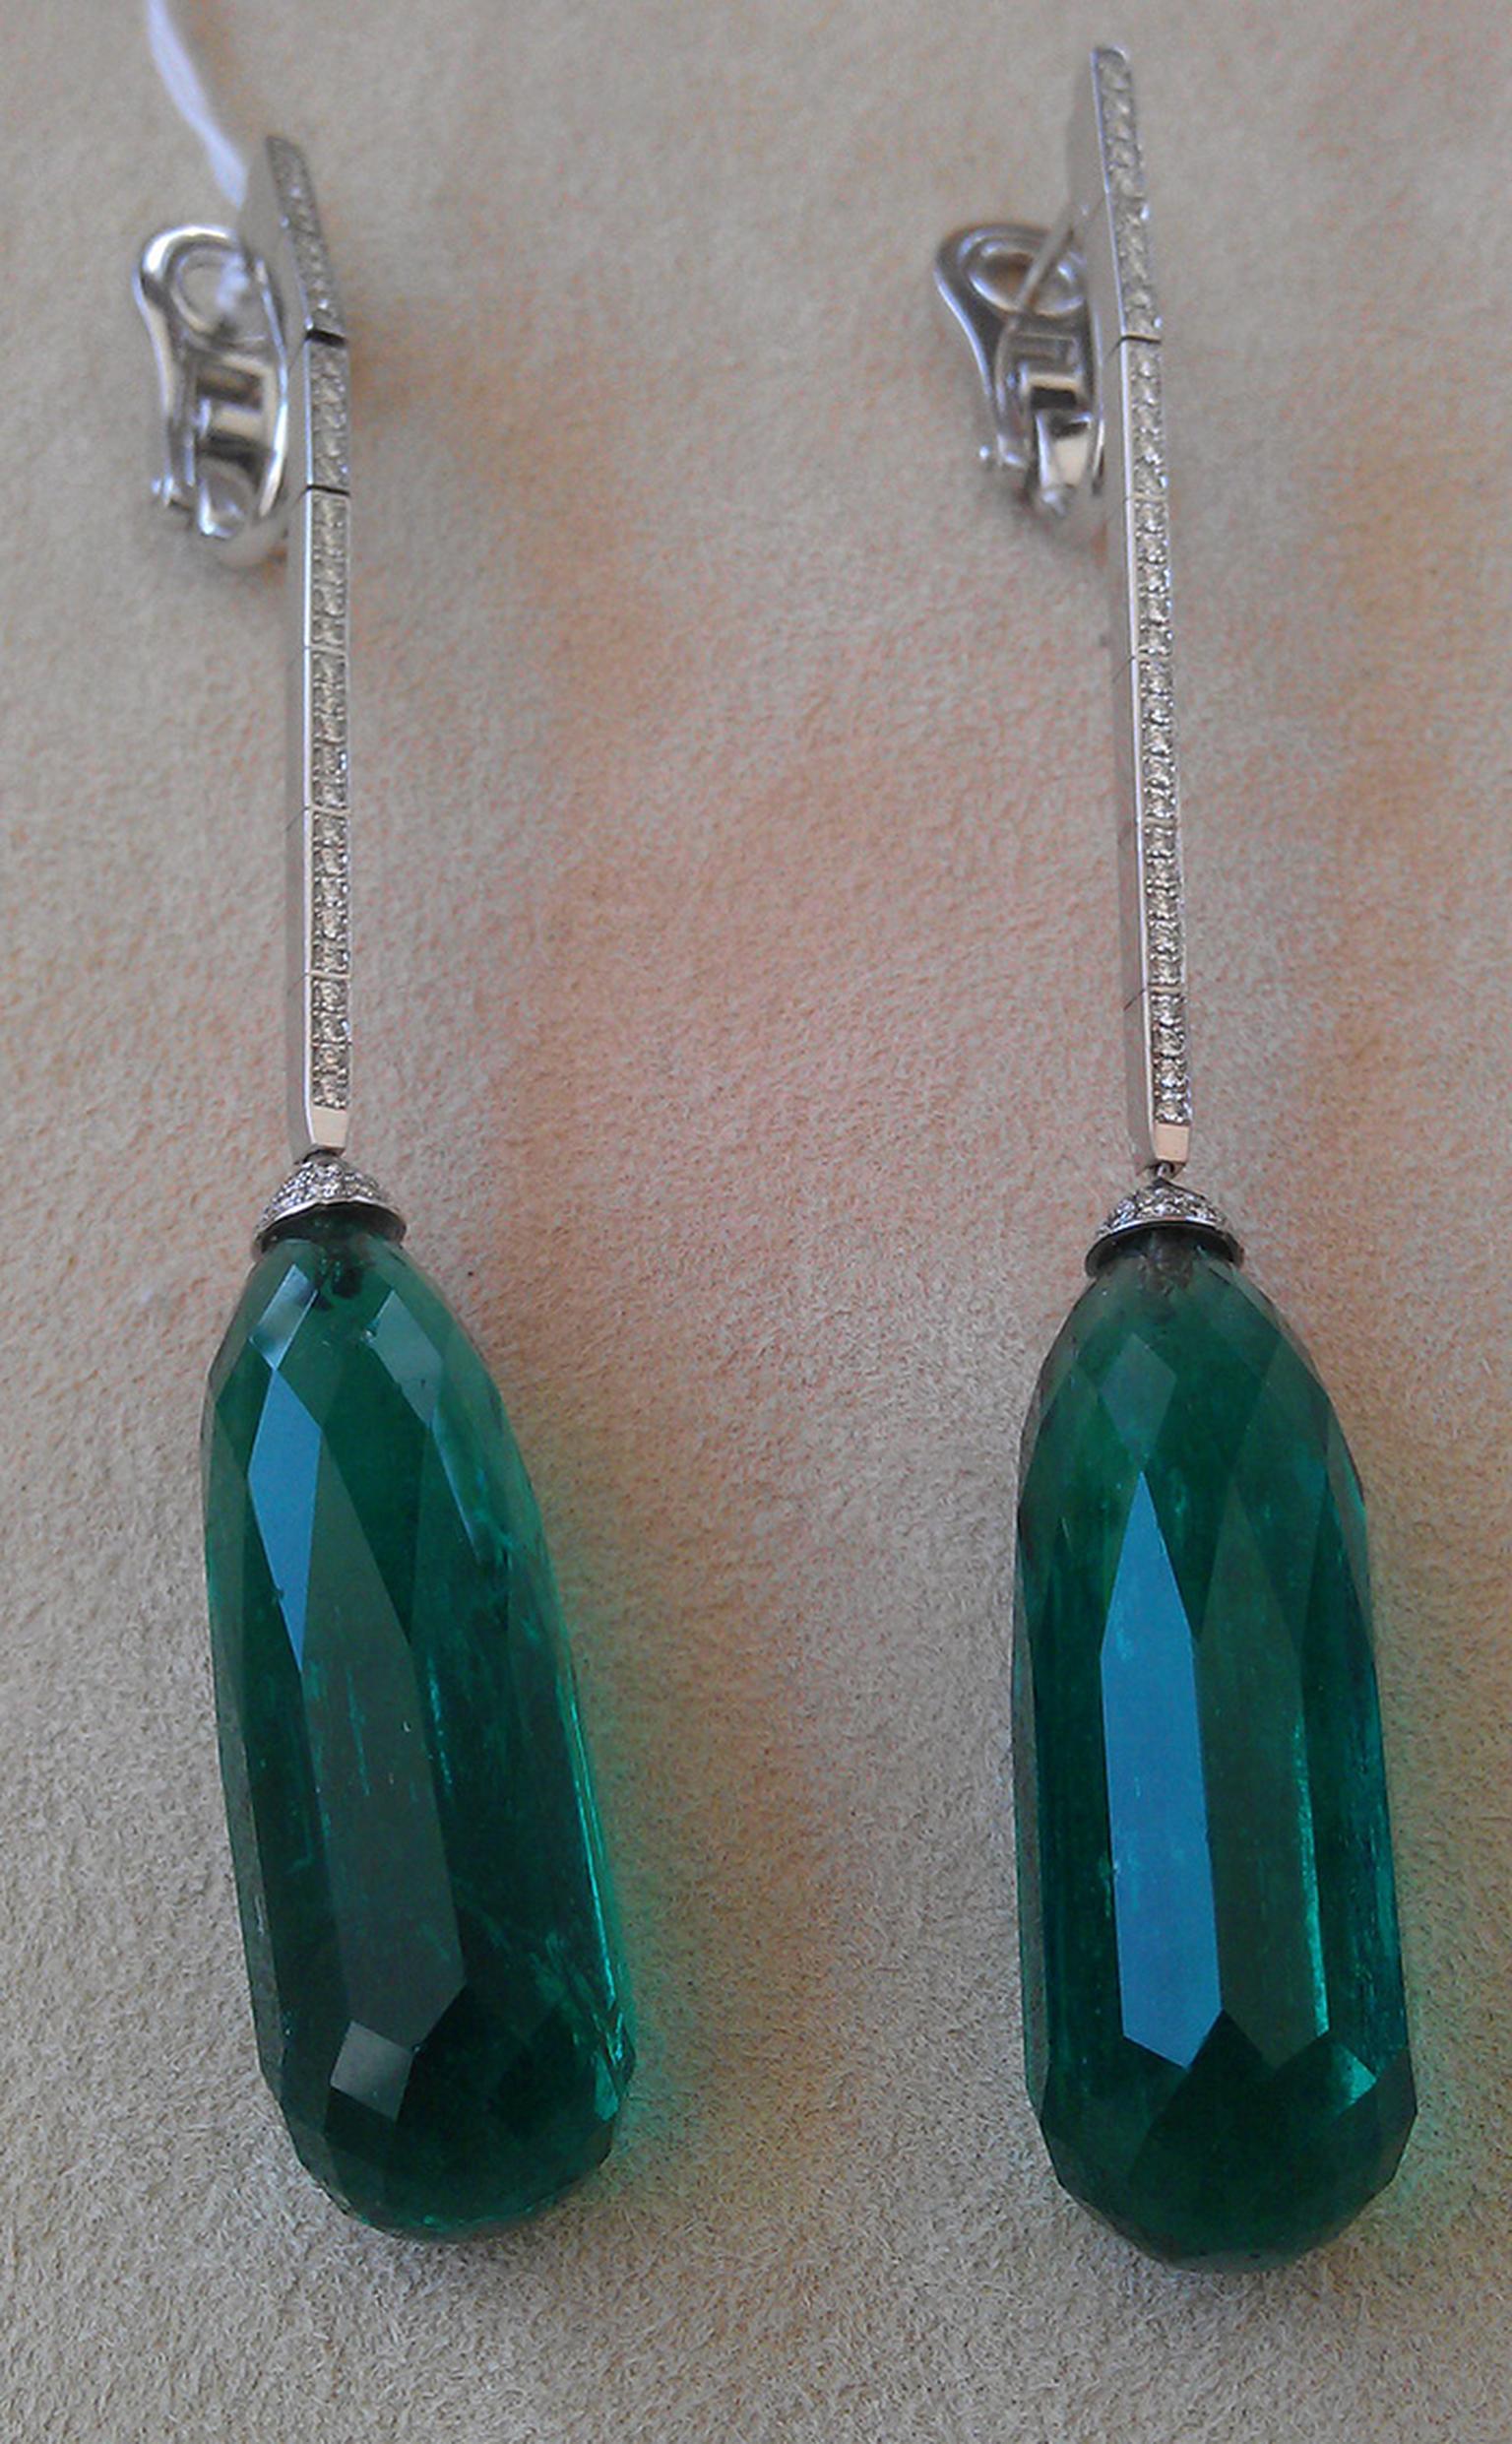 Chopard-Emerald-earrings-as-worn-by-Jane-Fonda.jpg